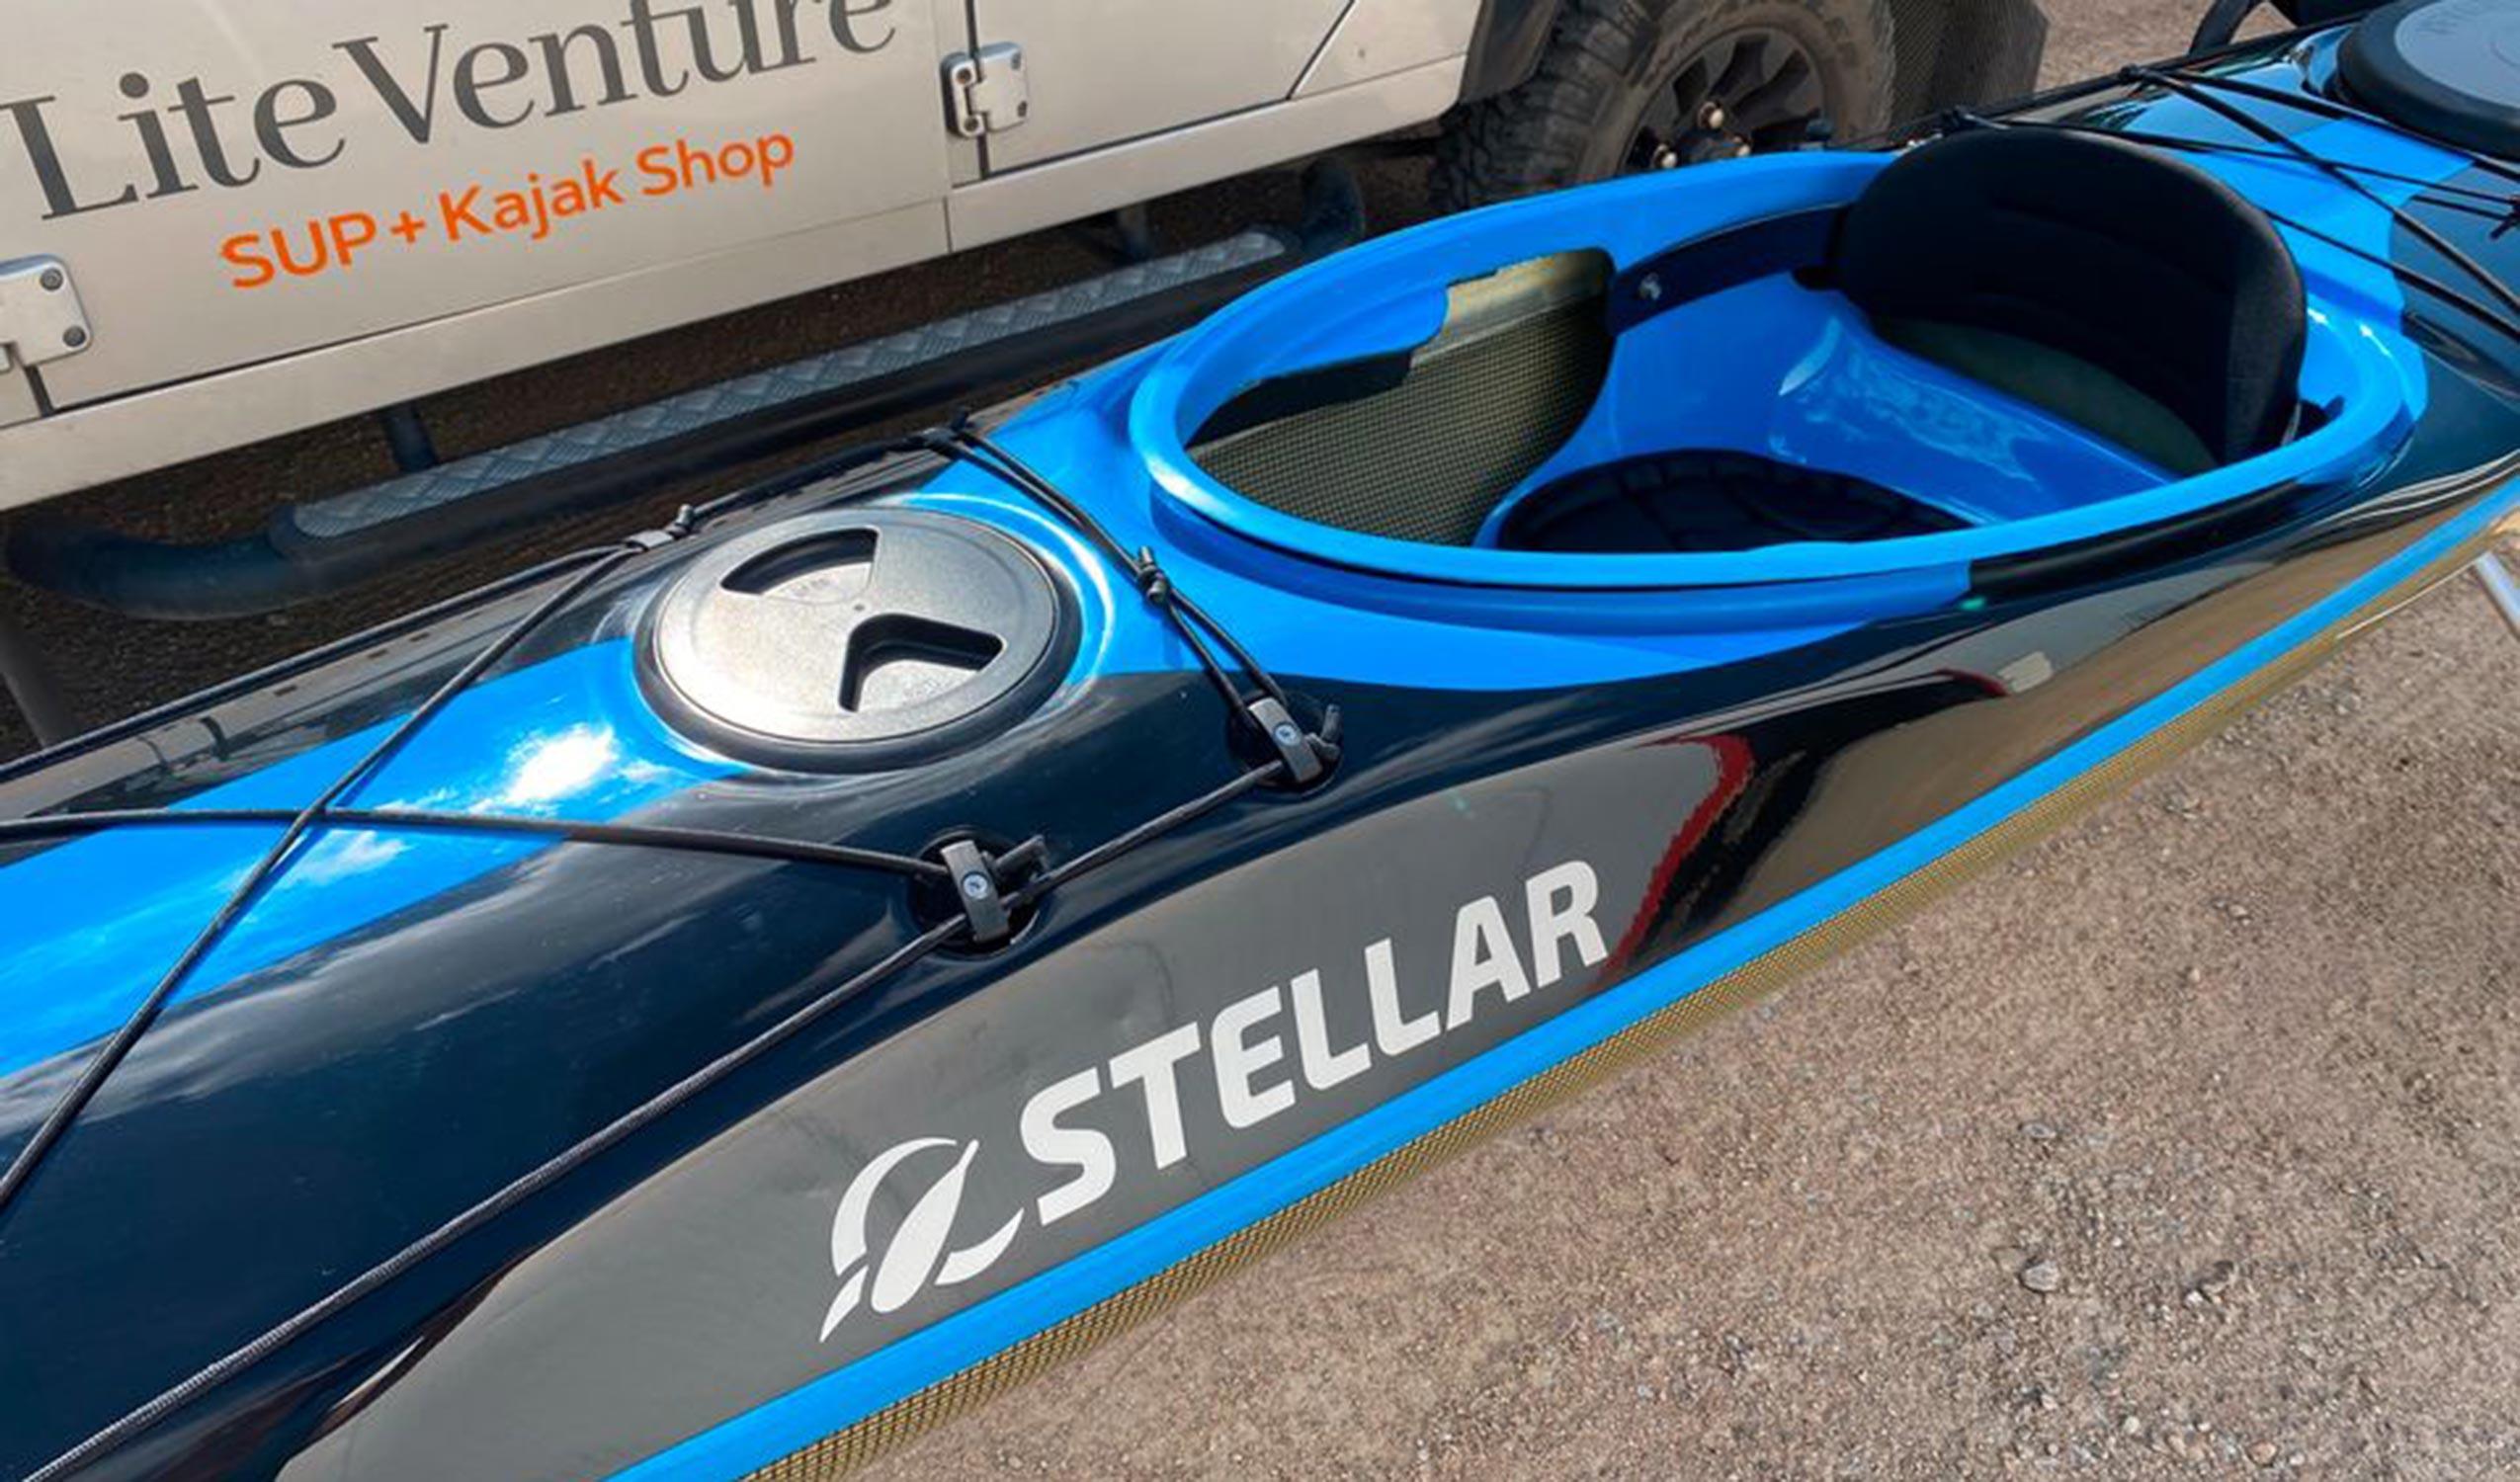 Produktbild von Kajak " S14 G2 Multisport-schwarz blau " der Marke STELLAR Lightweight für 3310.00 €. Erhältlich online bei Lite Venture ( www.liteventure.de )